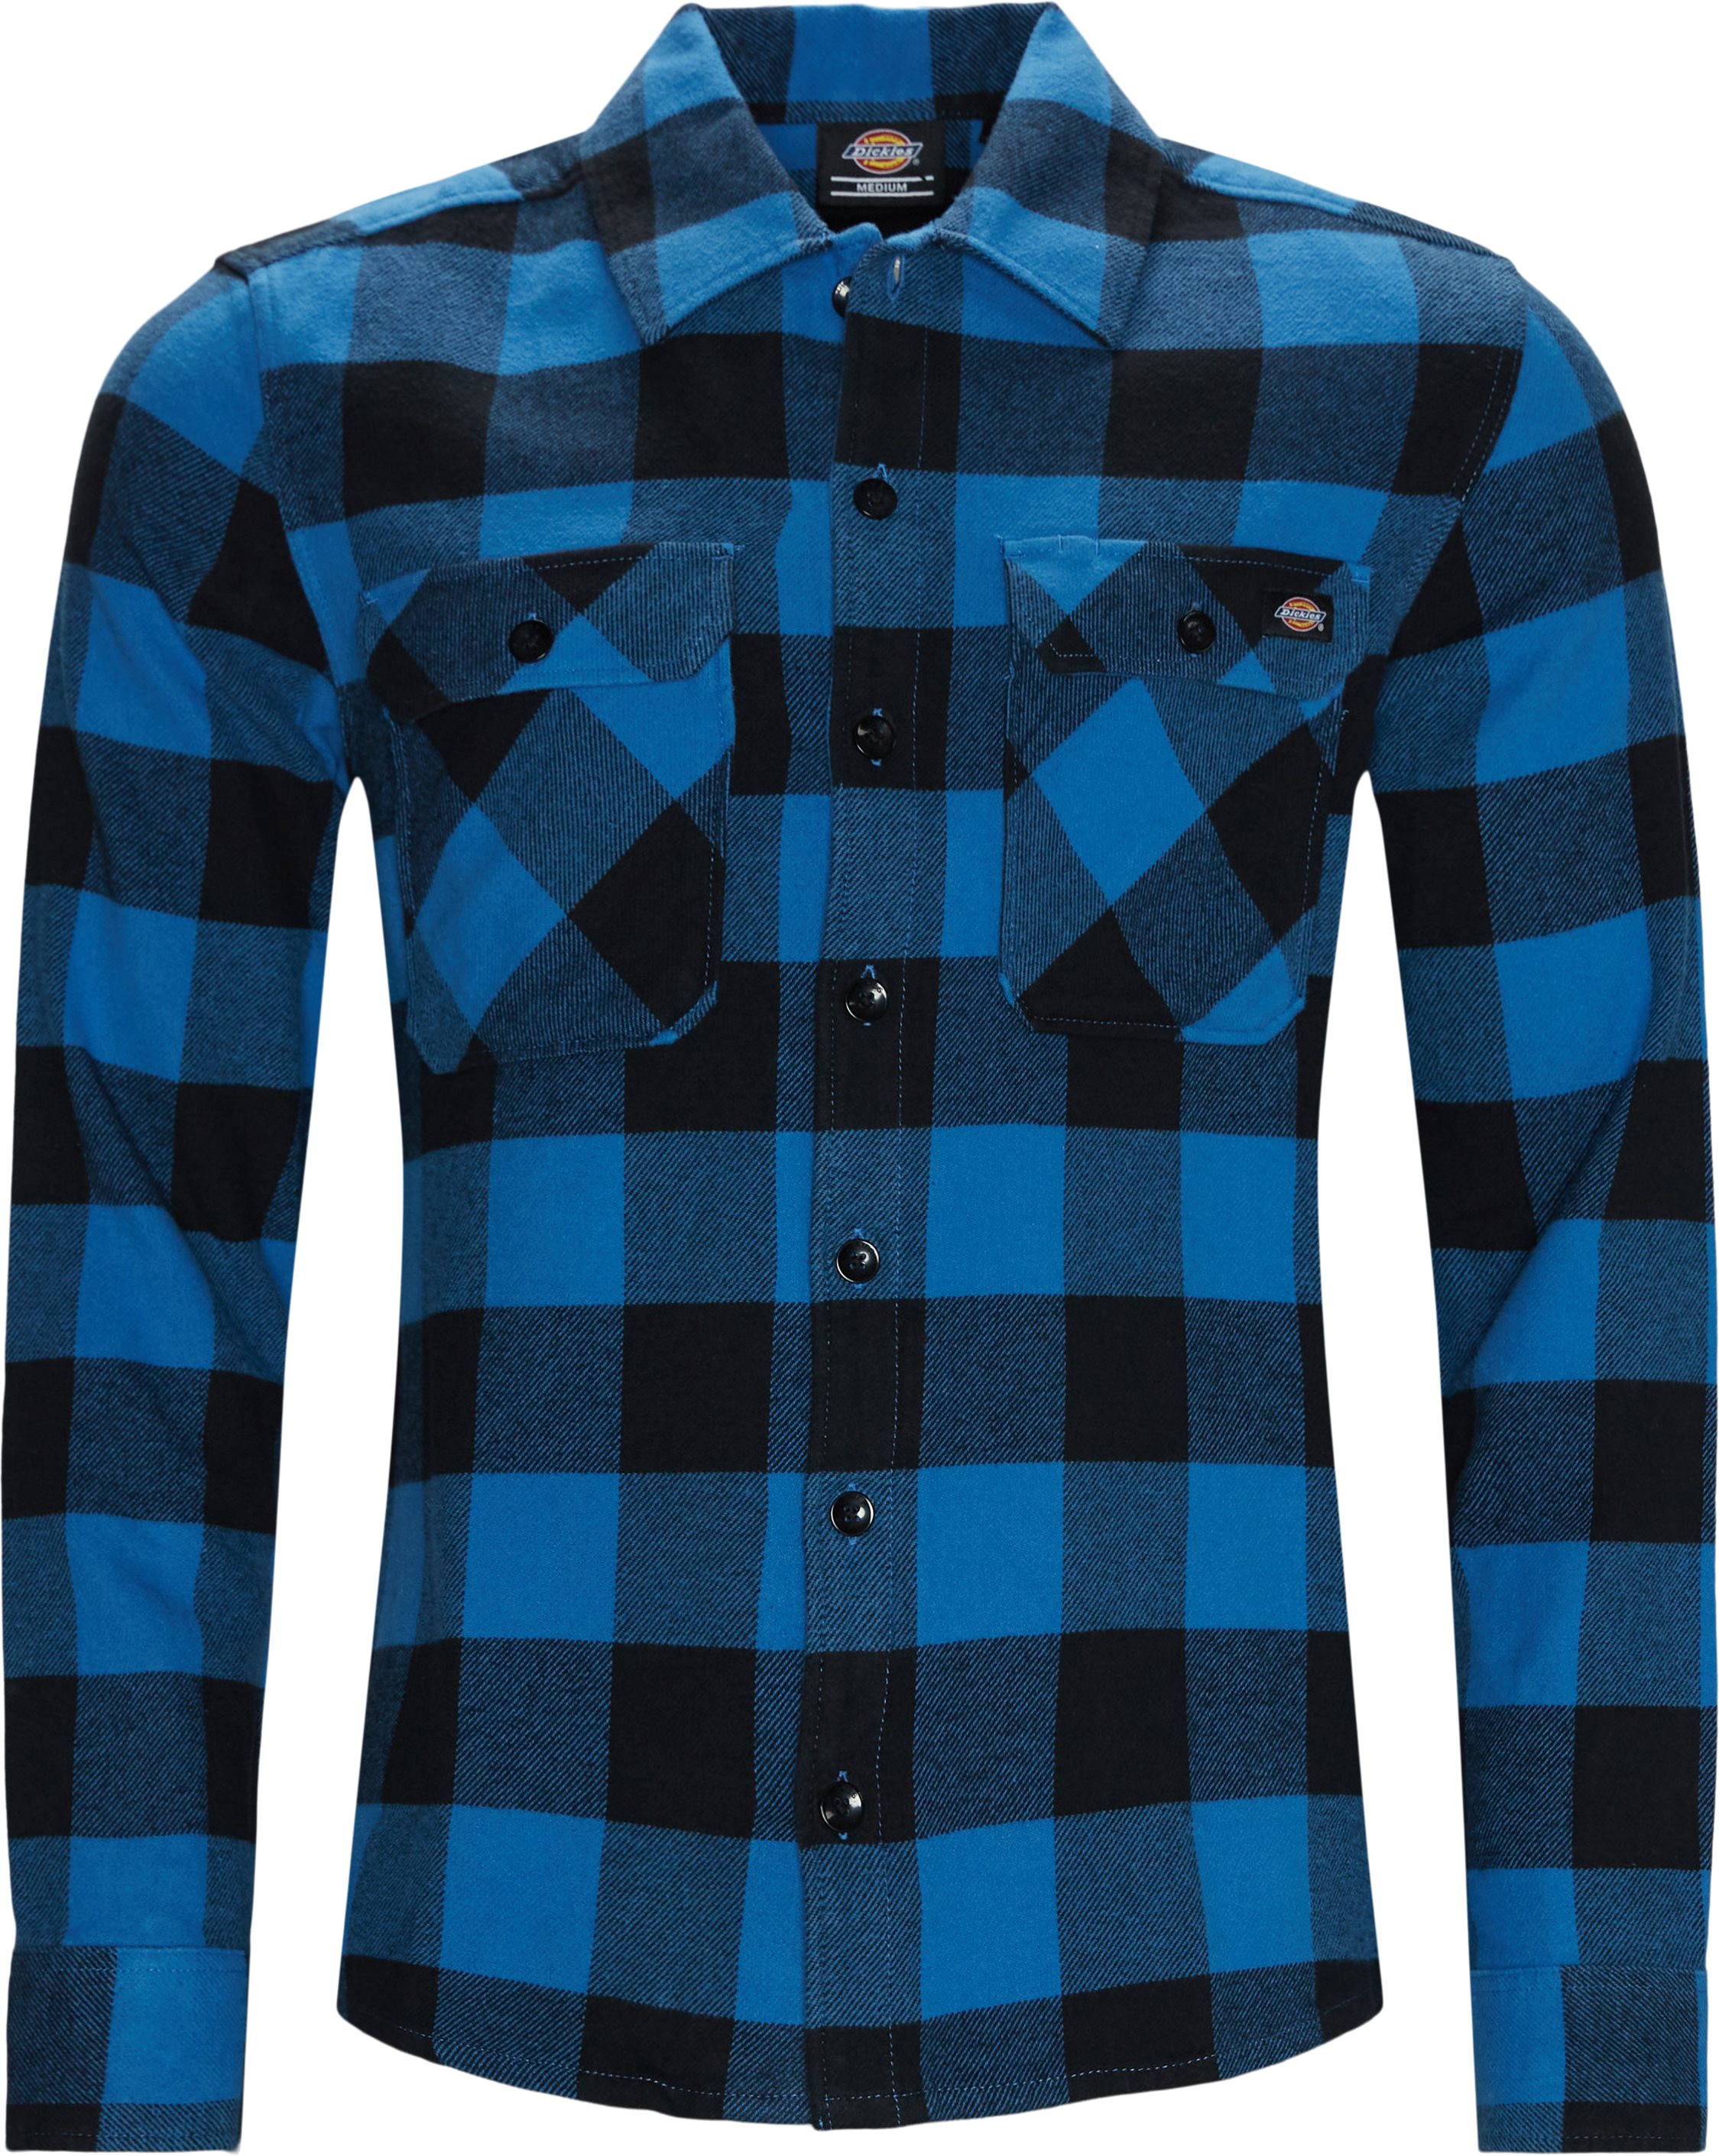 Sacramento Skjorte - Skjorter - Regular fit - Blå